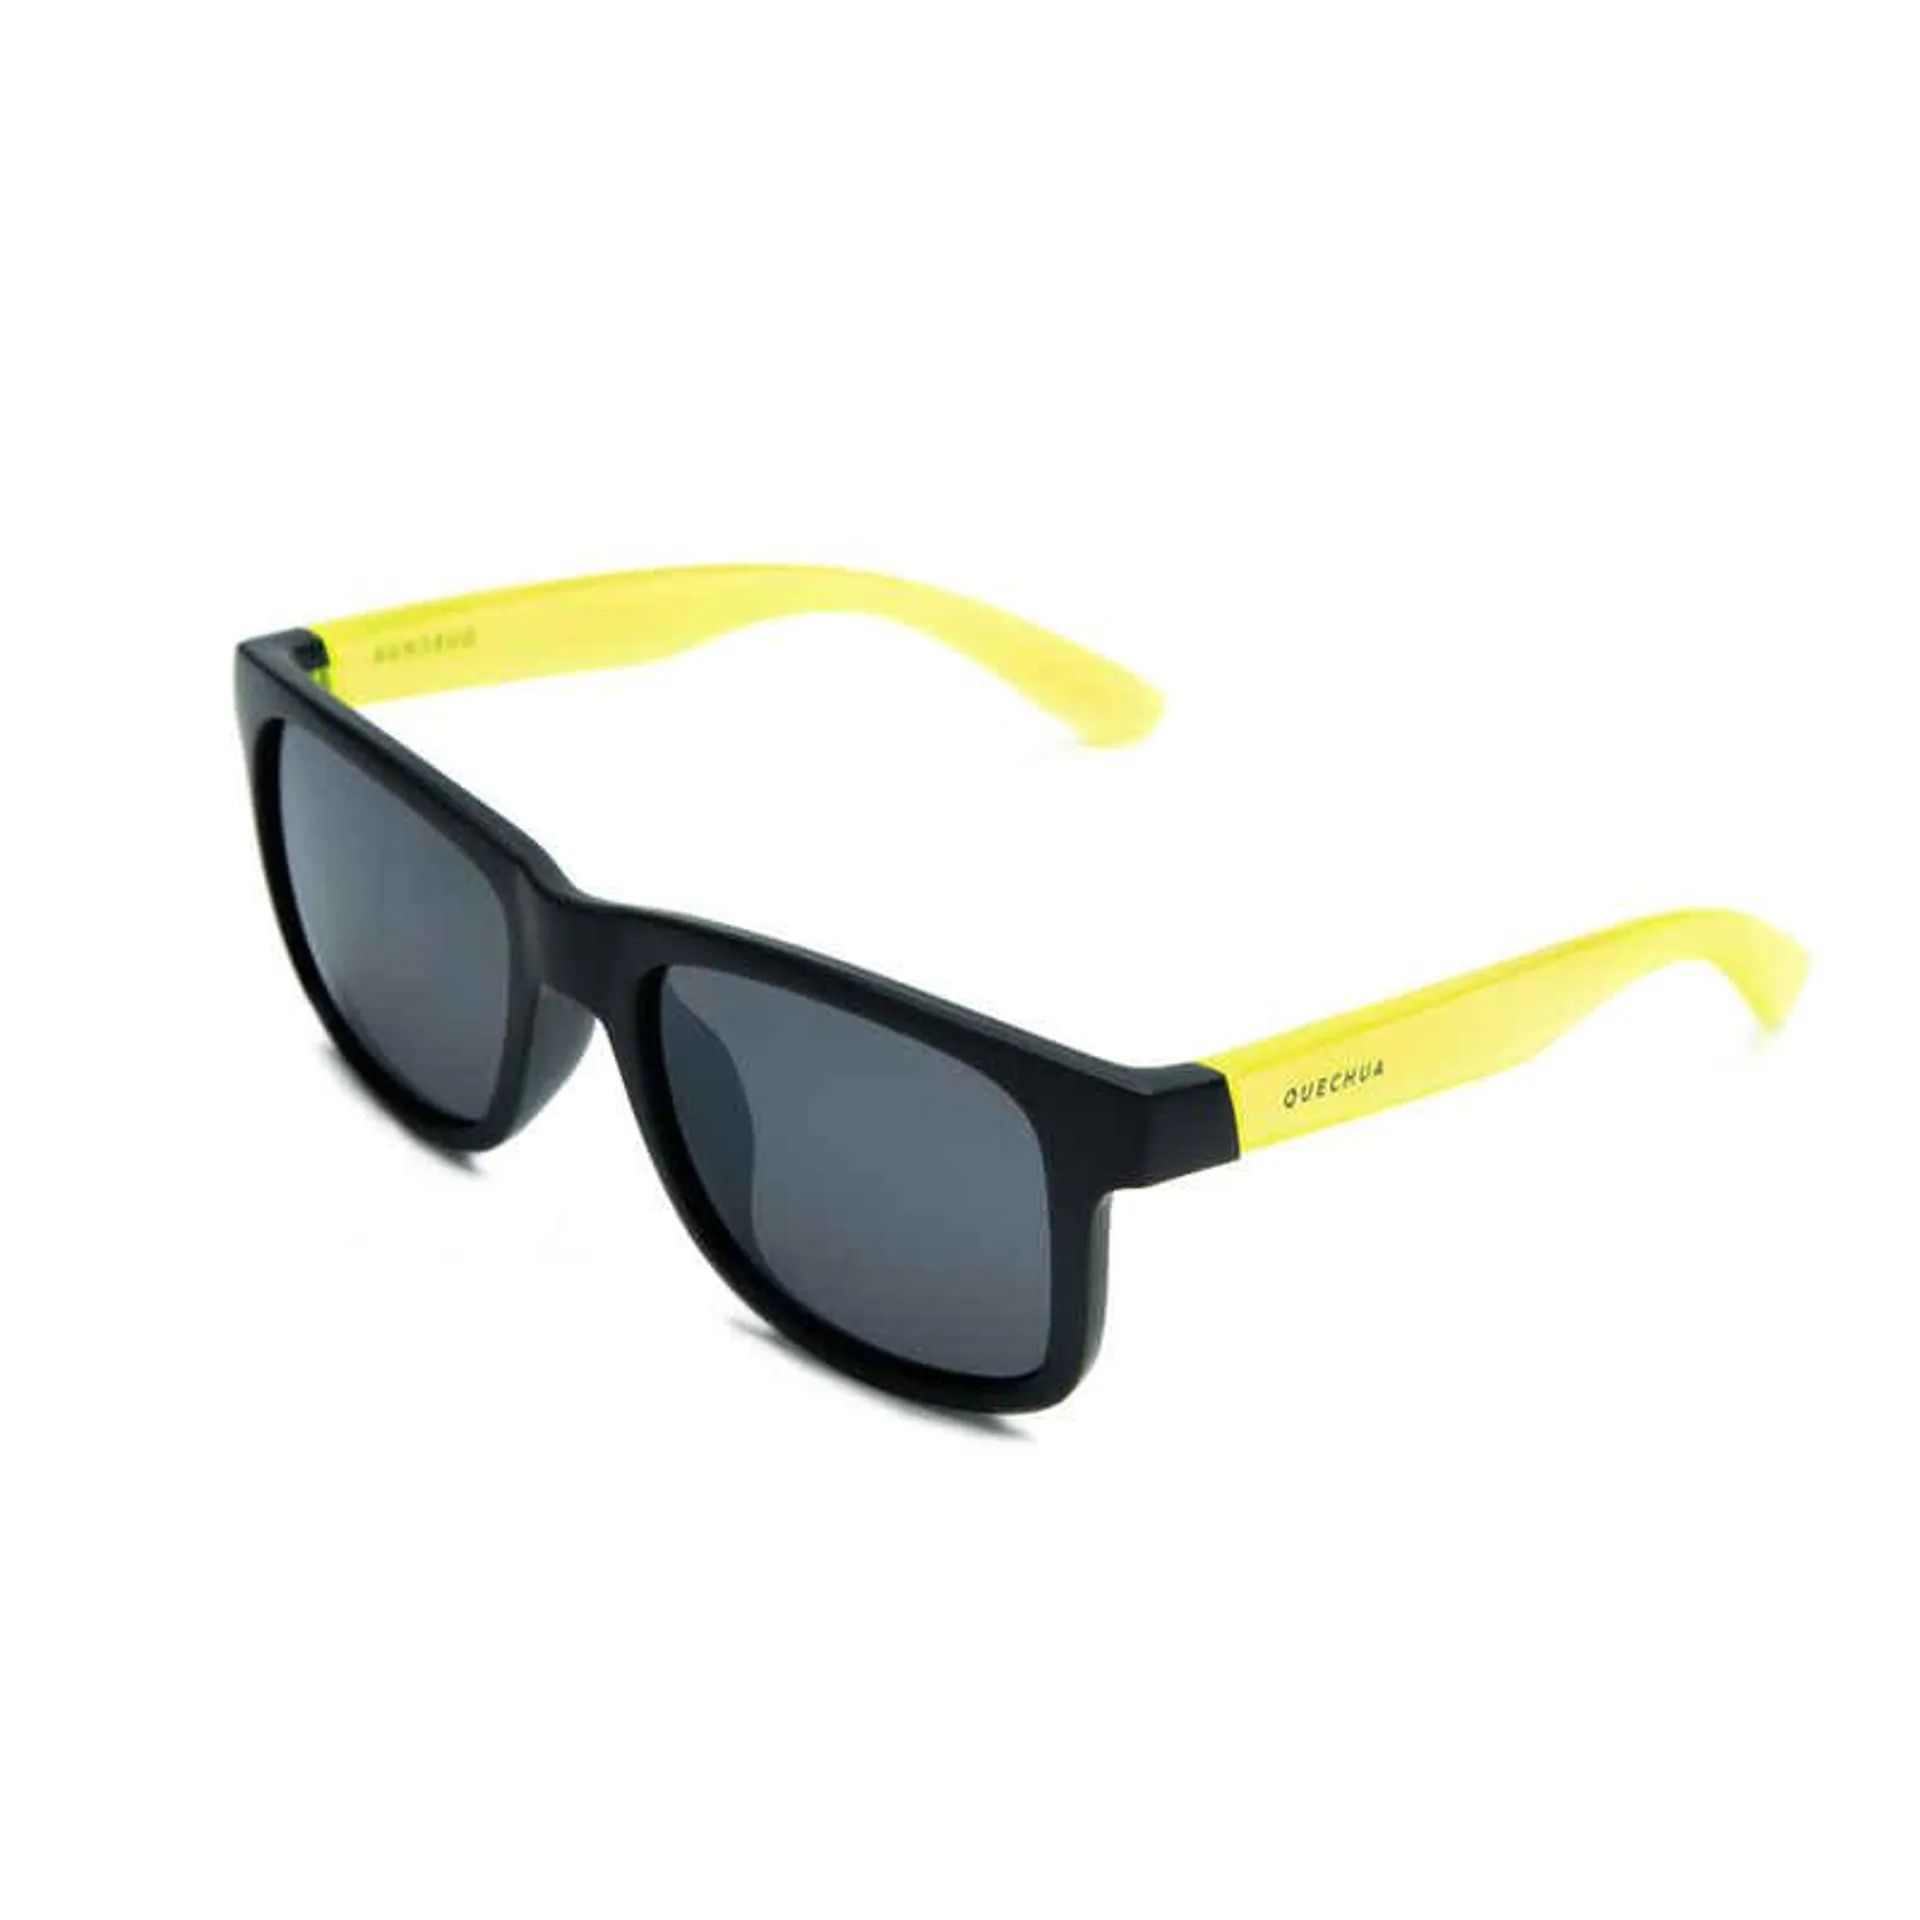 Turistické slnečné okuliare MH T140 pre deti nad 10 rokov kategória 3 žlté